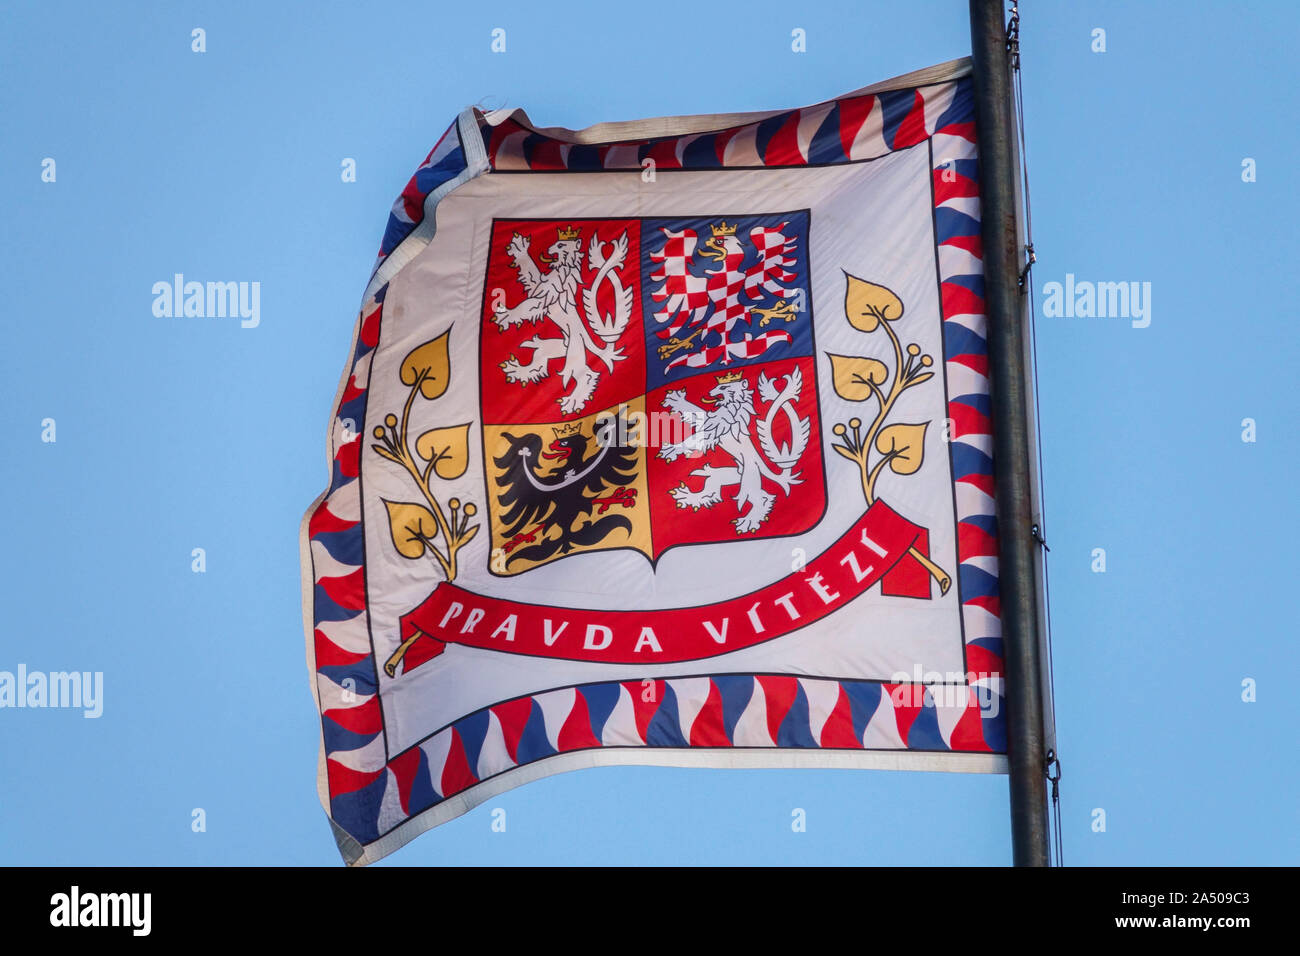 Di stemmi araldici sulla bandiera del Presidente, ceco lion, moravi e slesiani eagle, vola al Castello di Praga Repubblica Ceca Foto Stock